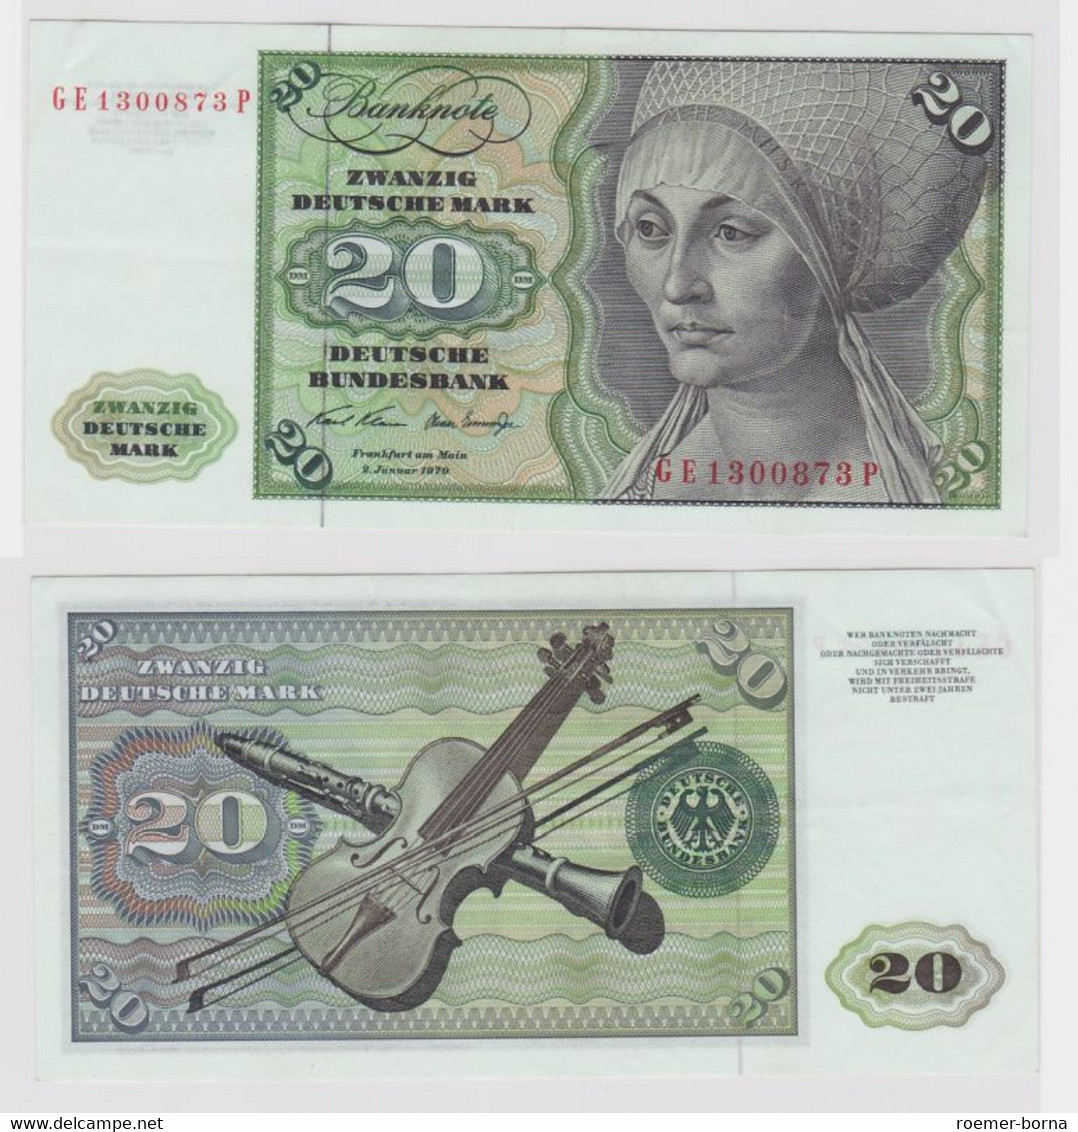 T148244 Banknote 20 DM Deutsche Mark Ro. 271b Schein 2.Jan. 1970 KN GE 1300873 P - 20 DM